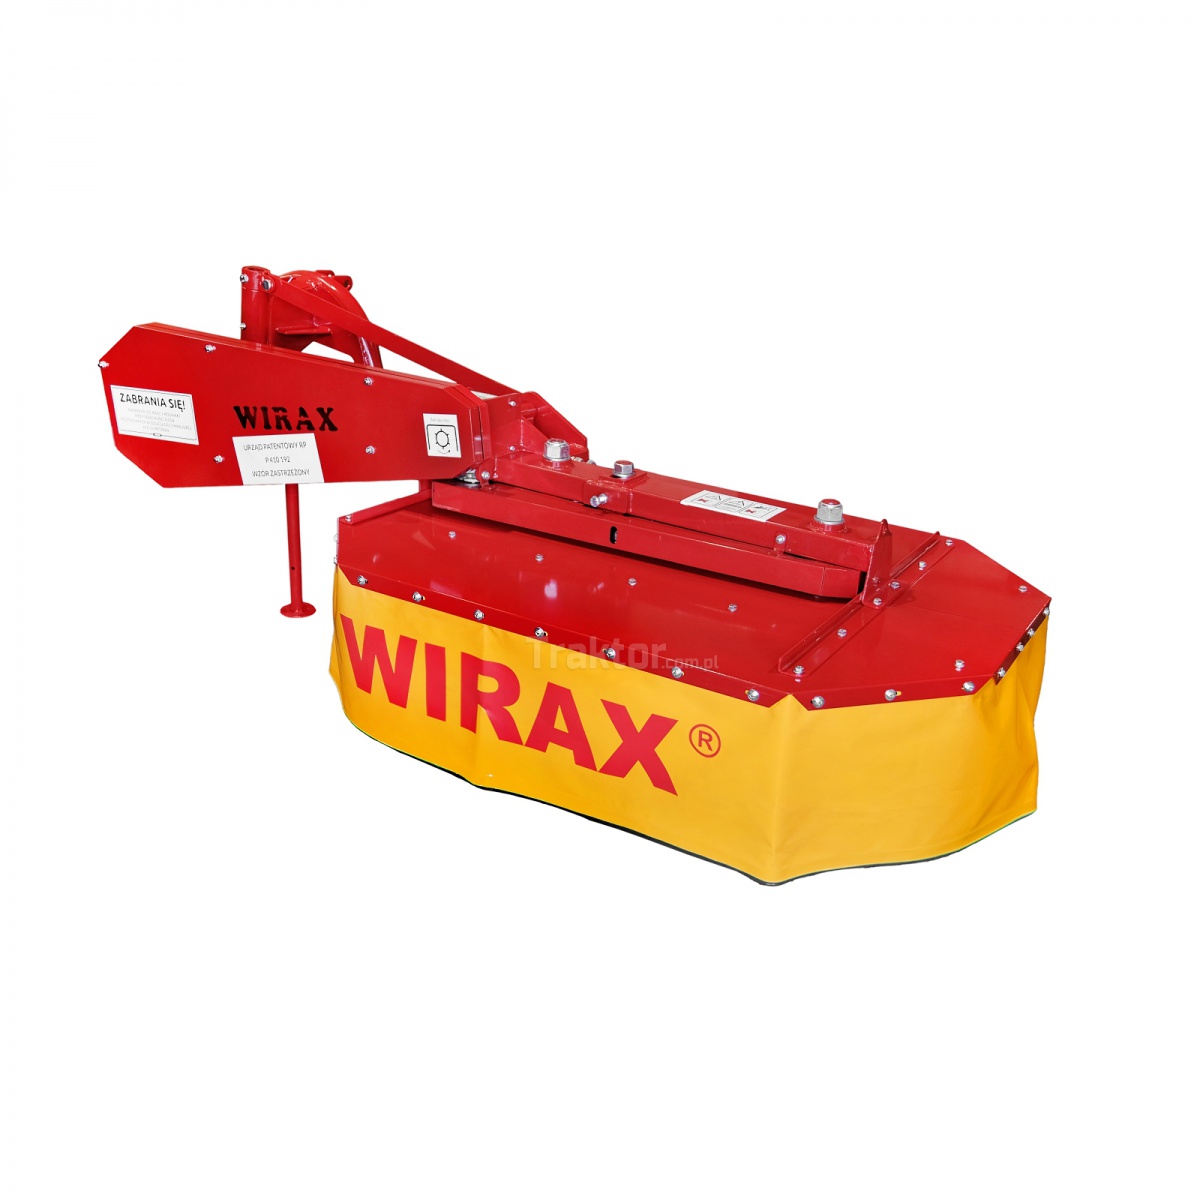 wirax - Rotary drum mower WIRAX 125 cm